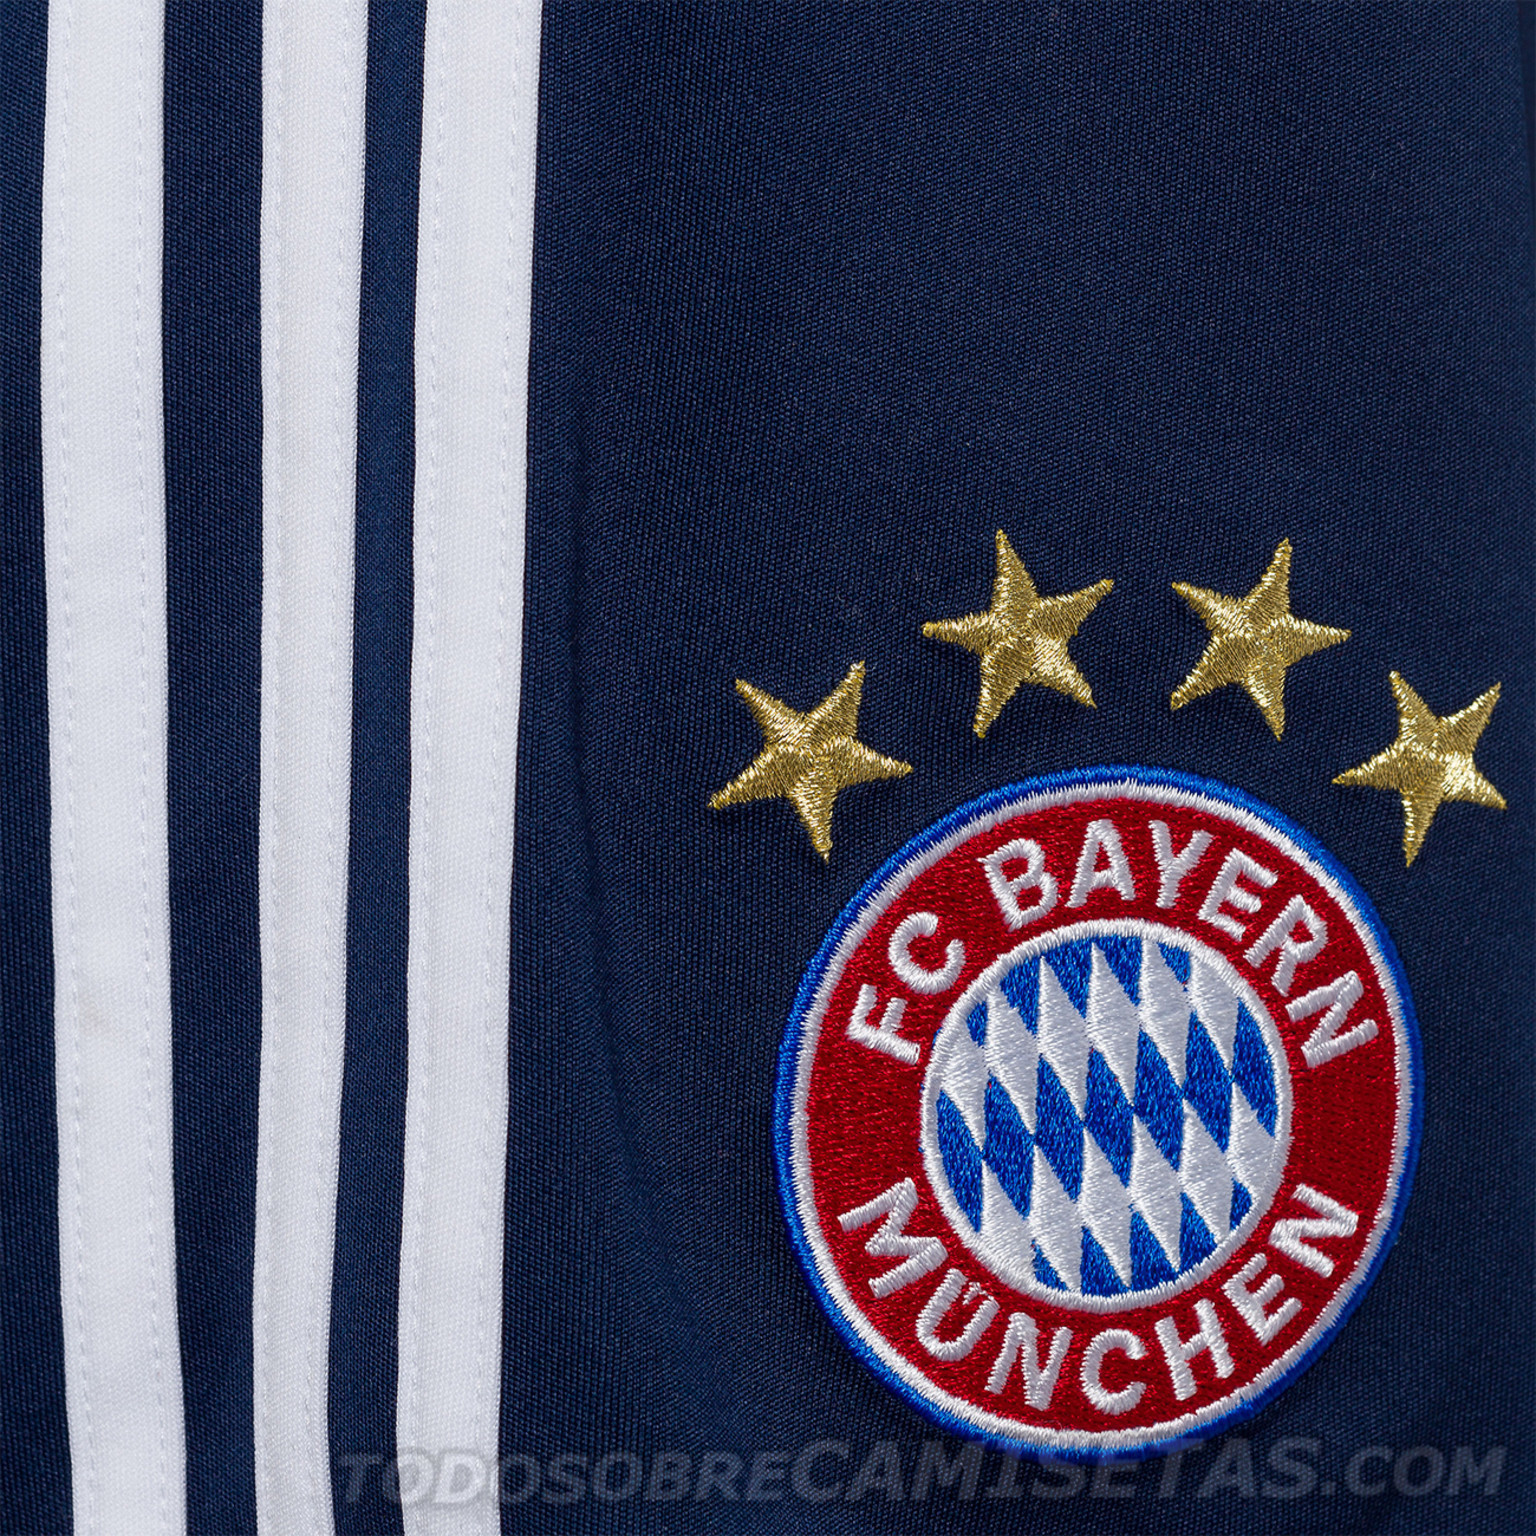 Bayern-Munich-2018-19-adidas-new-home-kit-16.jpg